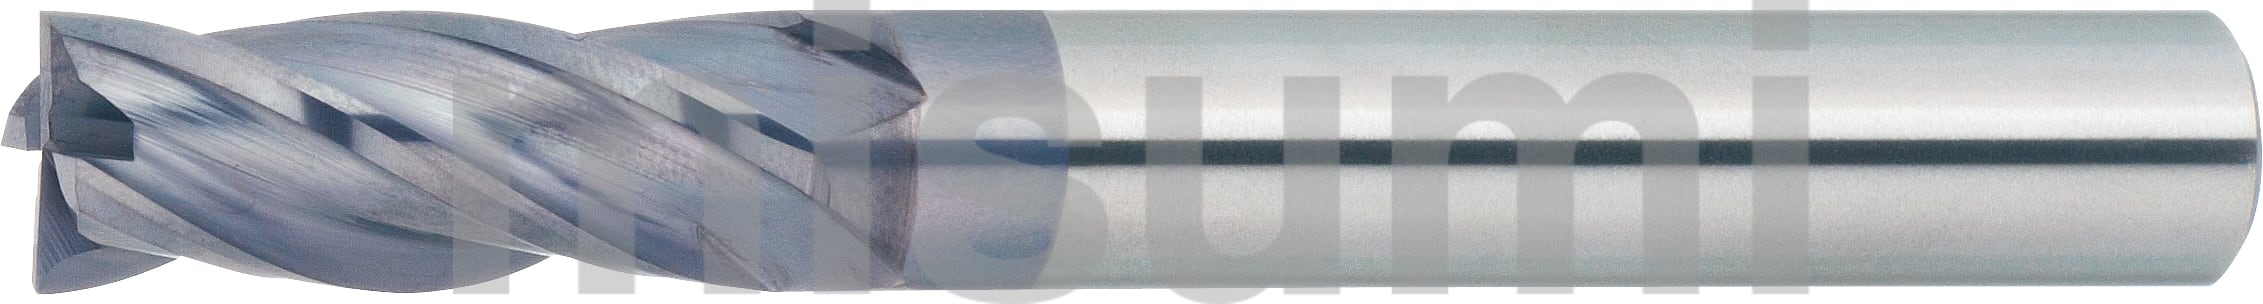 XAL-PEM4SR7 | XALシリーズ超硬スクエアエンドミル 4枚刃/刃長2.5D